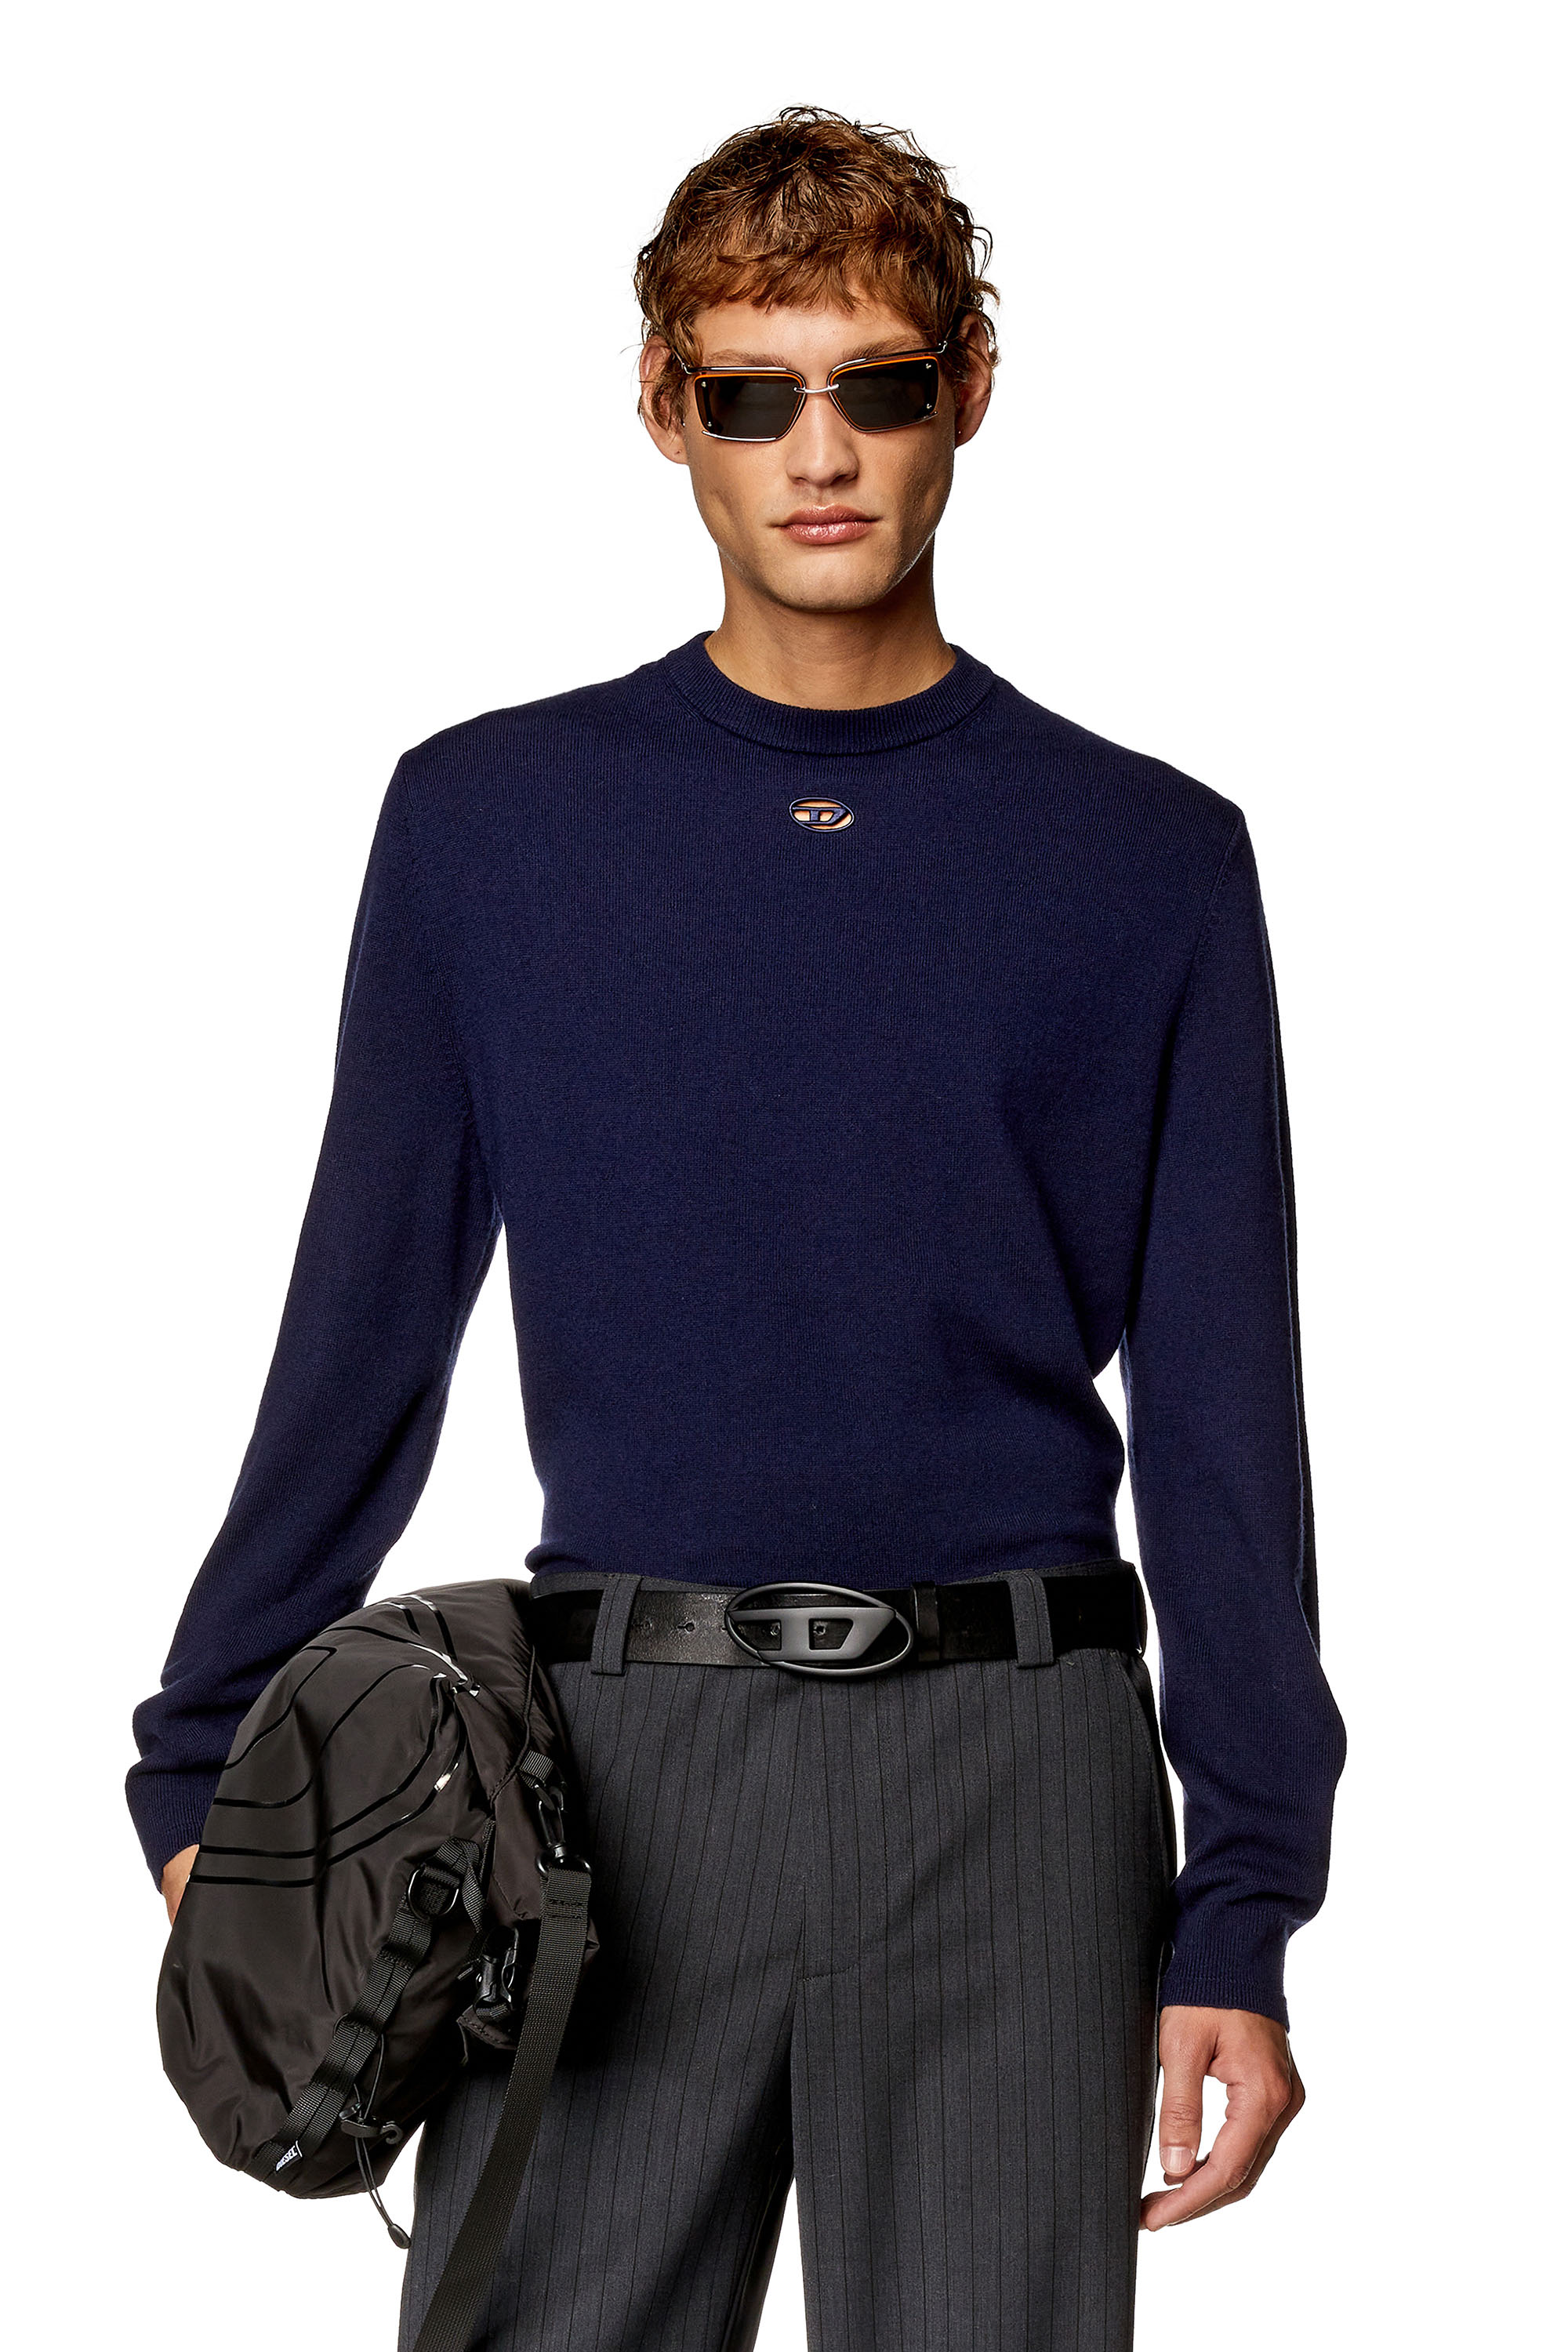 Diesel - Jersey de lana y cachemira - Punto - Hombre - Azul marino